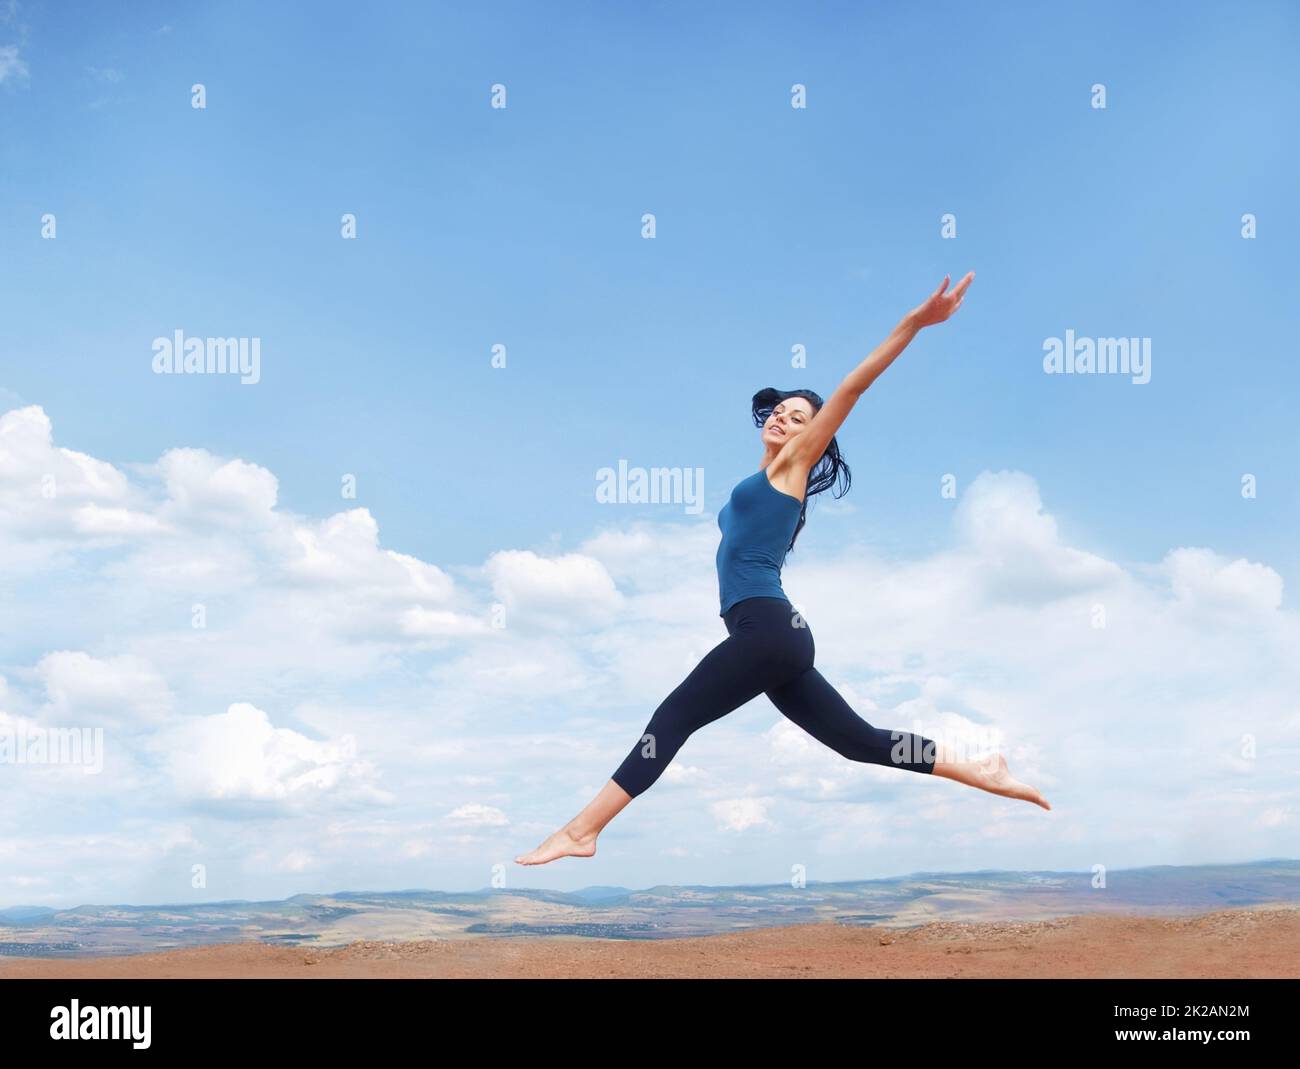 Springen Sie, wenn Sie das Leben lieben. Aufnahme einer schönen jungen Frau, die während eines Trainings im Freien enthusiastisch springt. Stockfoto